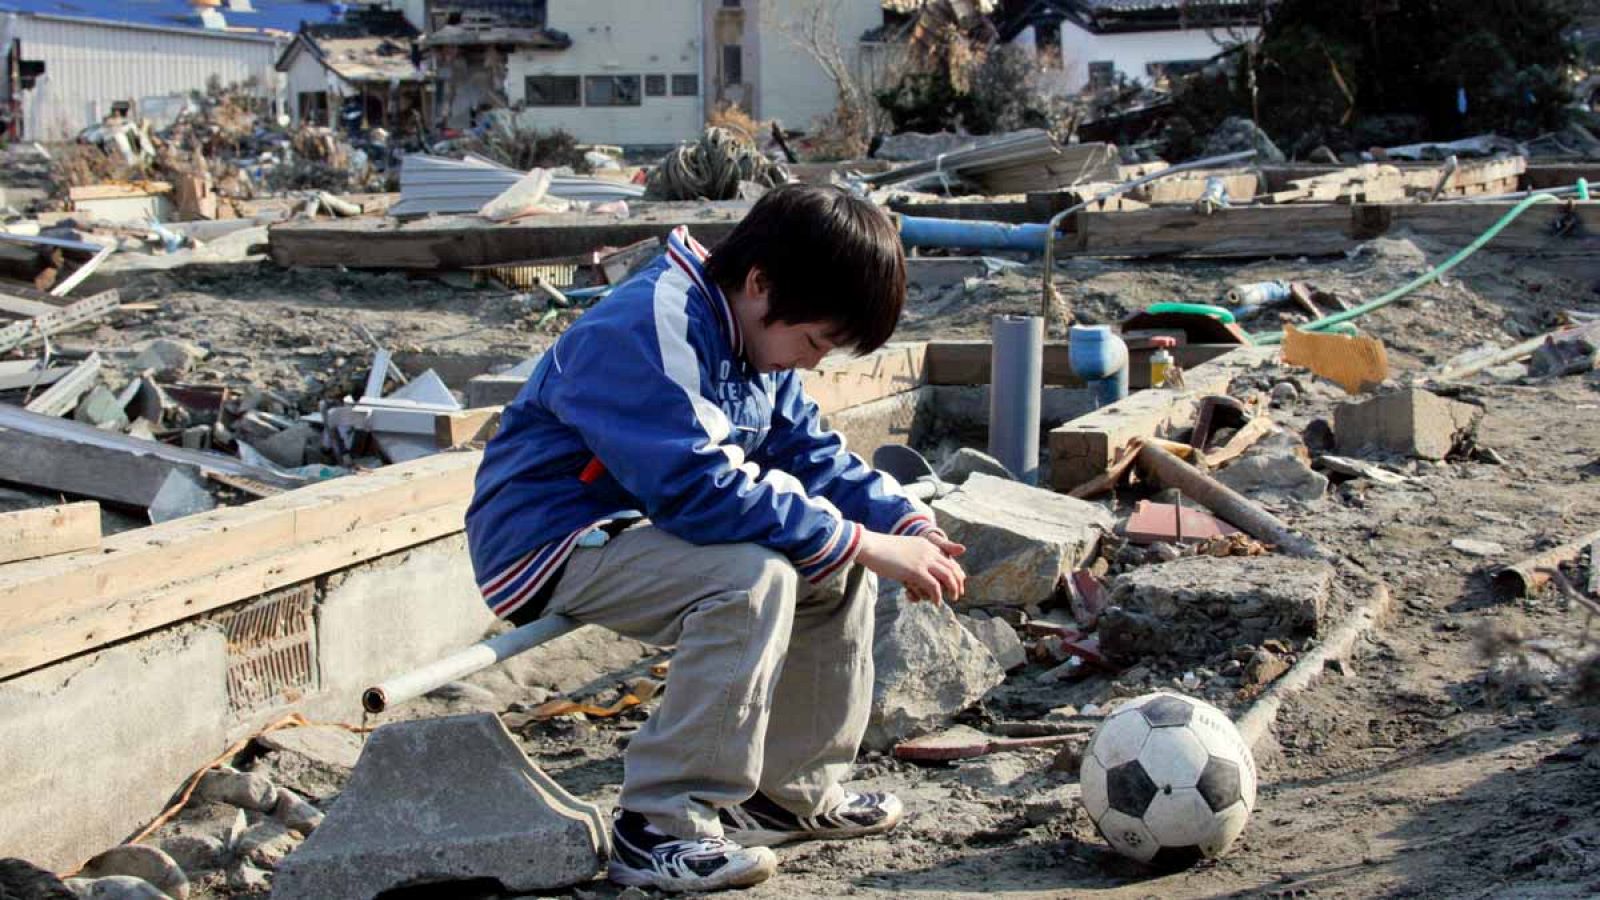 El potente terremoto de marzo de 2011 causó más de 18.000 muertos y desaparecidos.